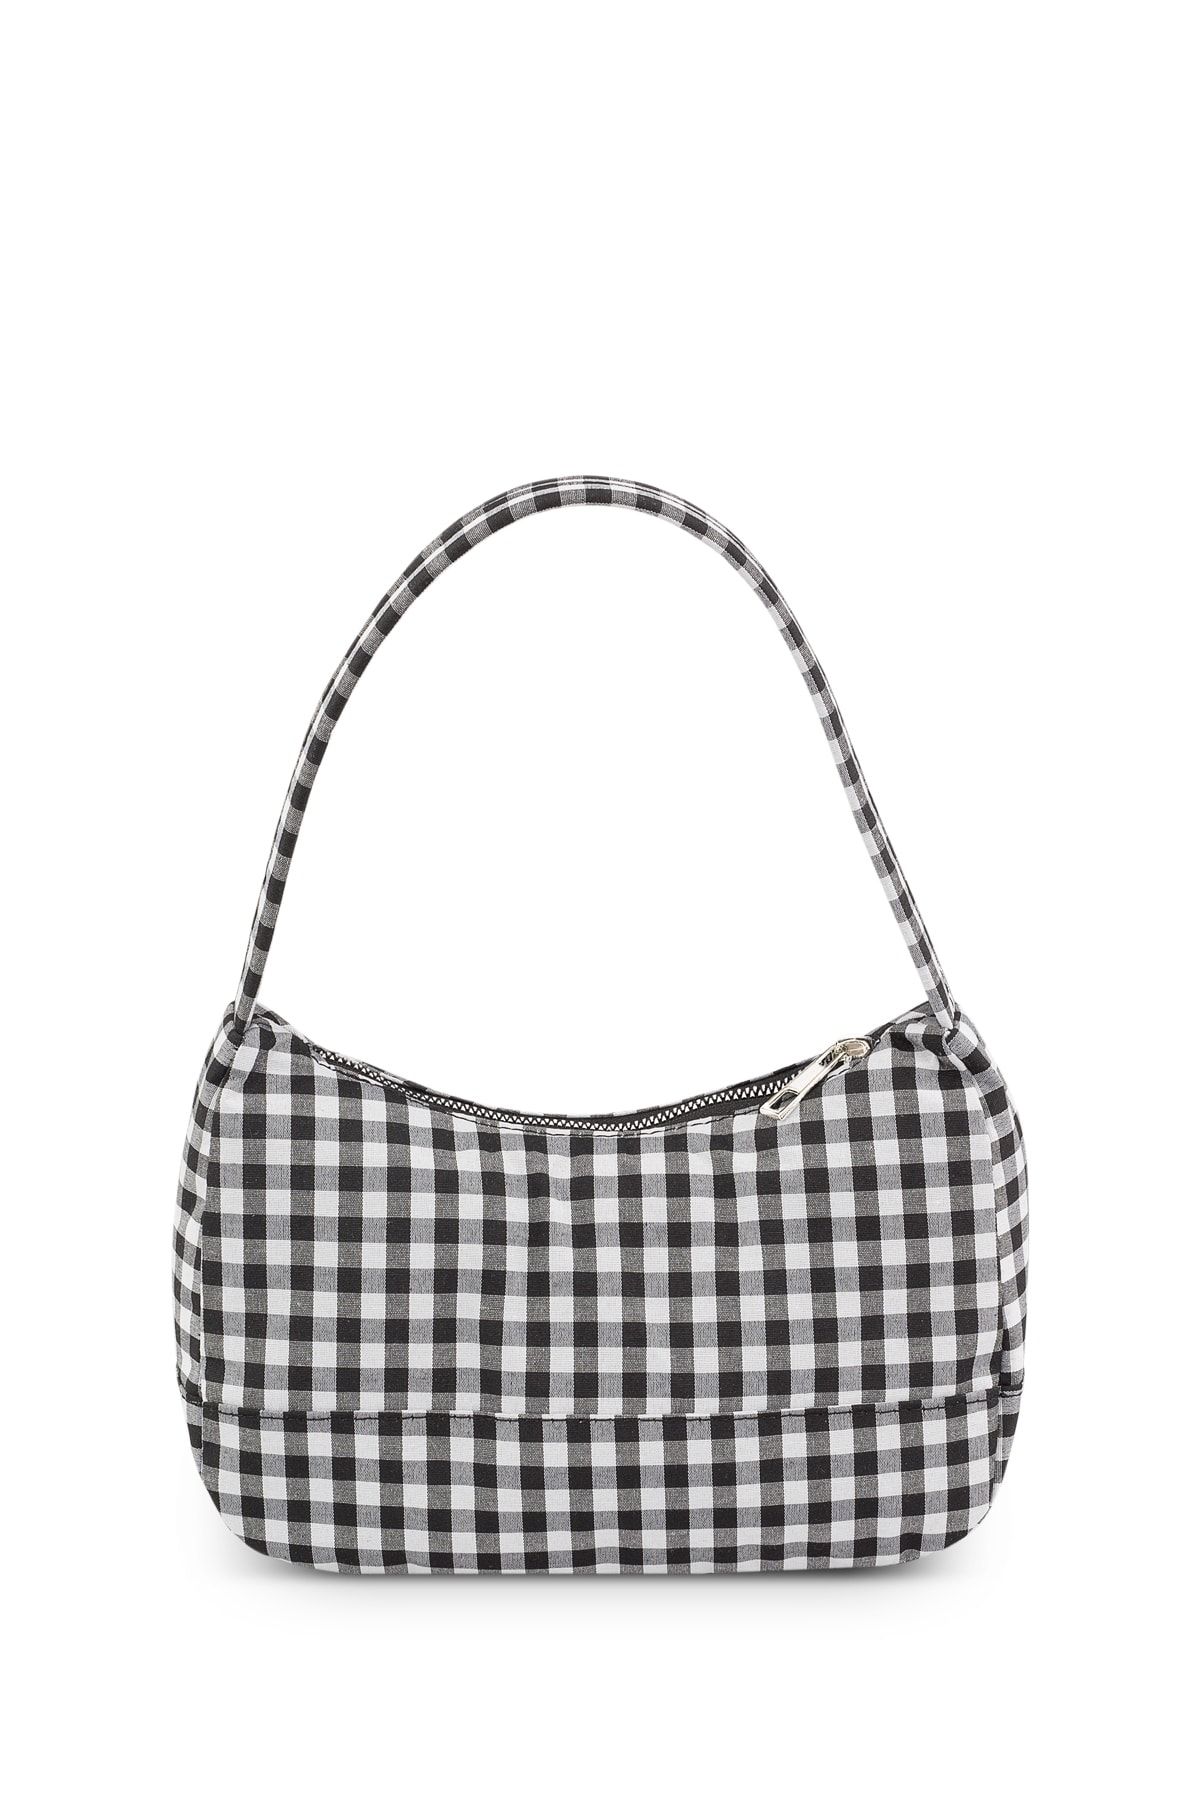 Housebags Kadın Pötikareli Siyah Baguette Çanta 197 Fiyatı, Yorumları